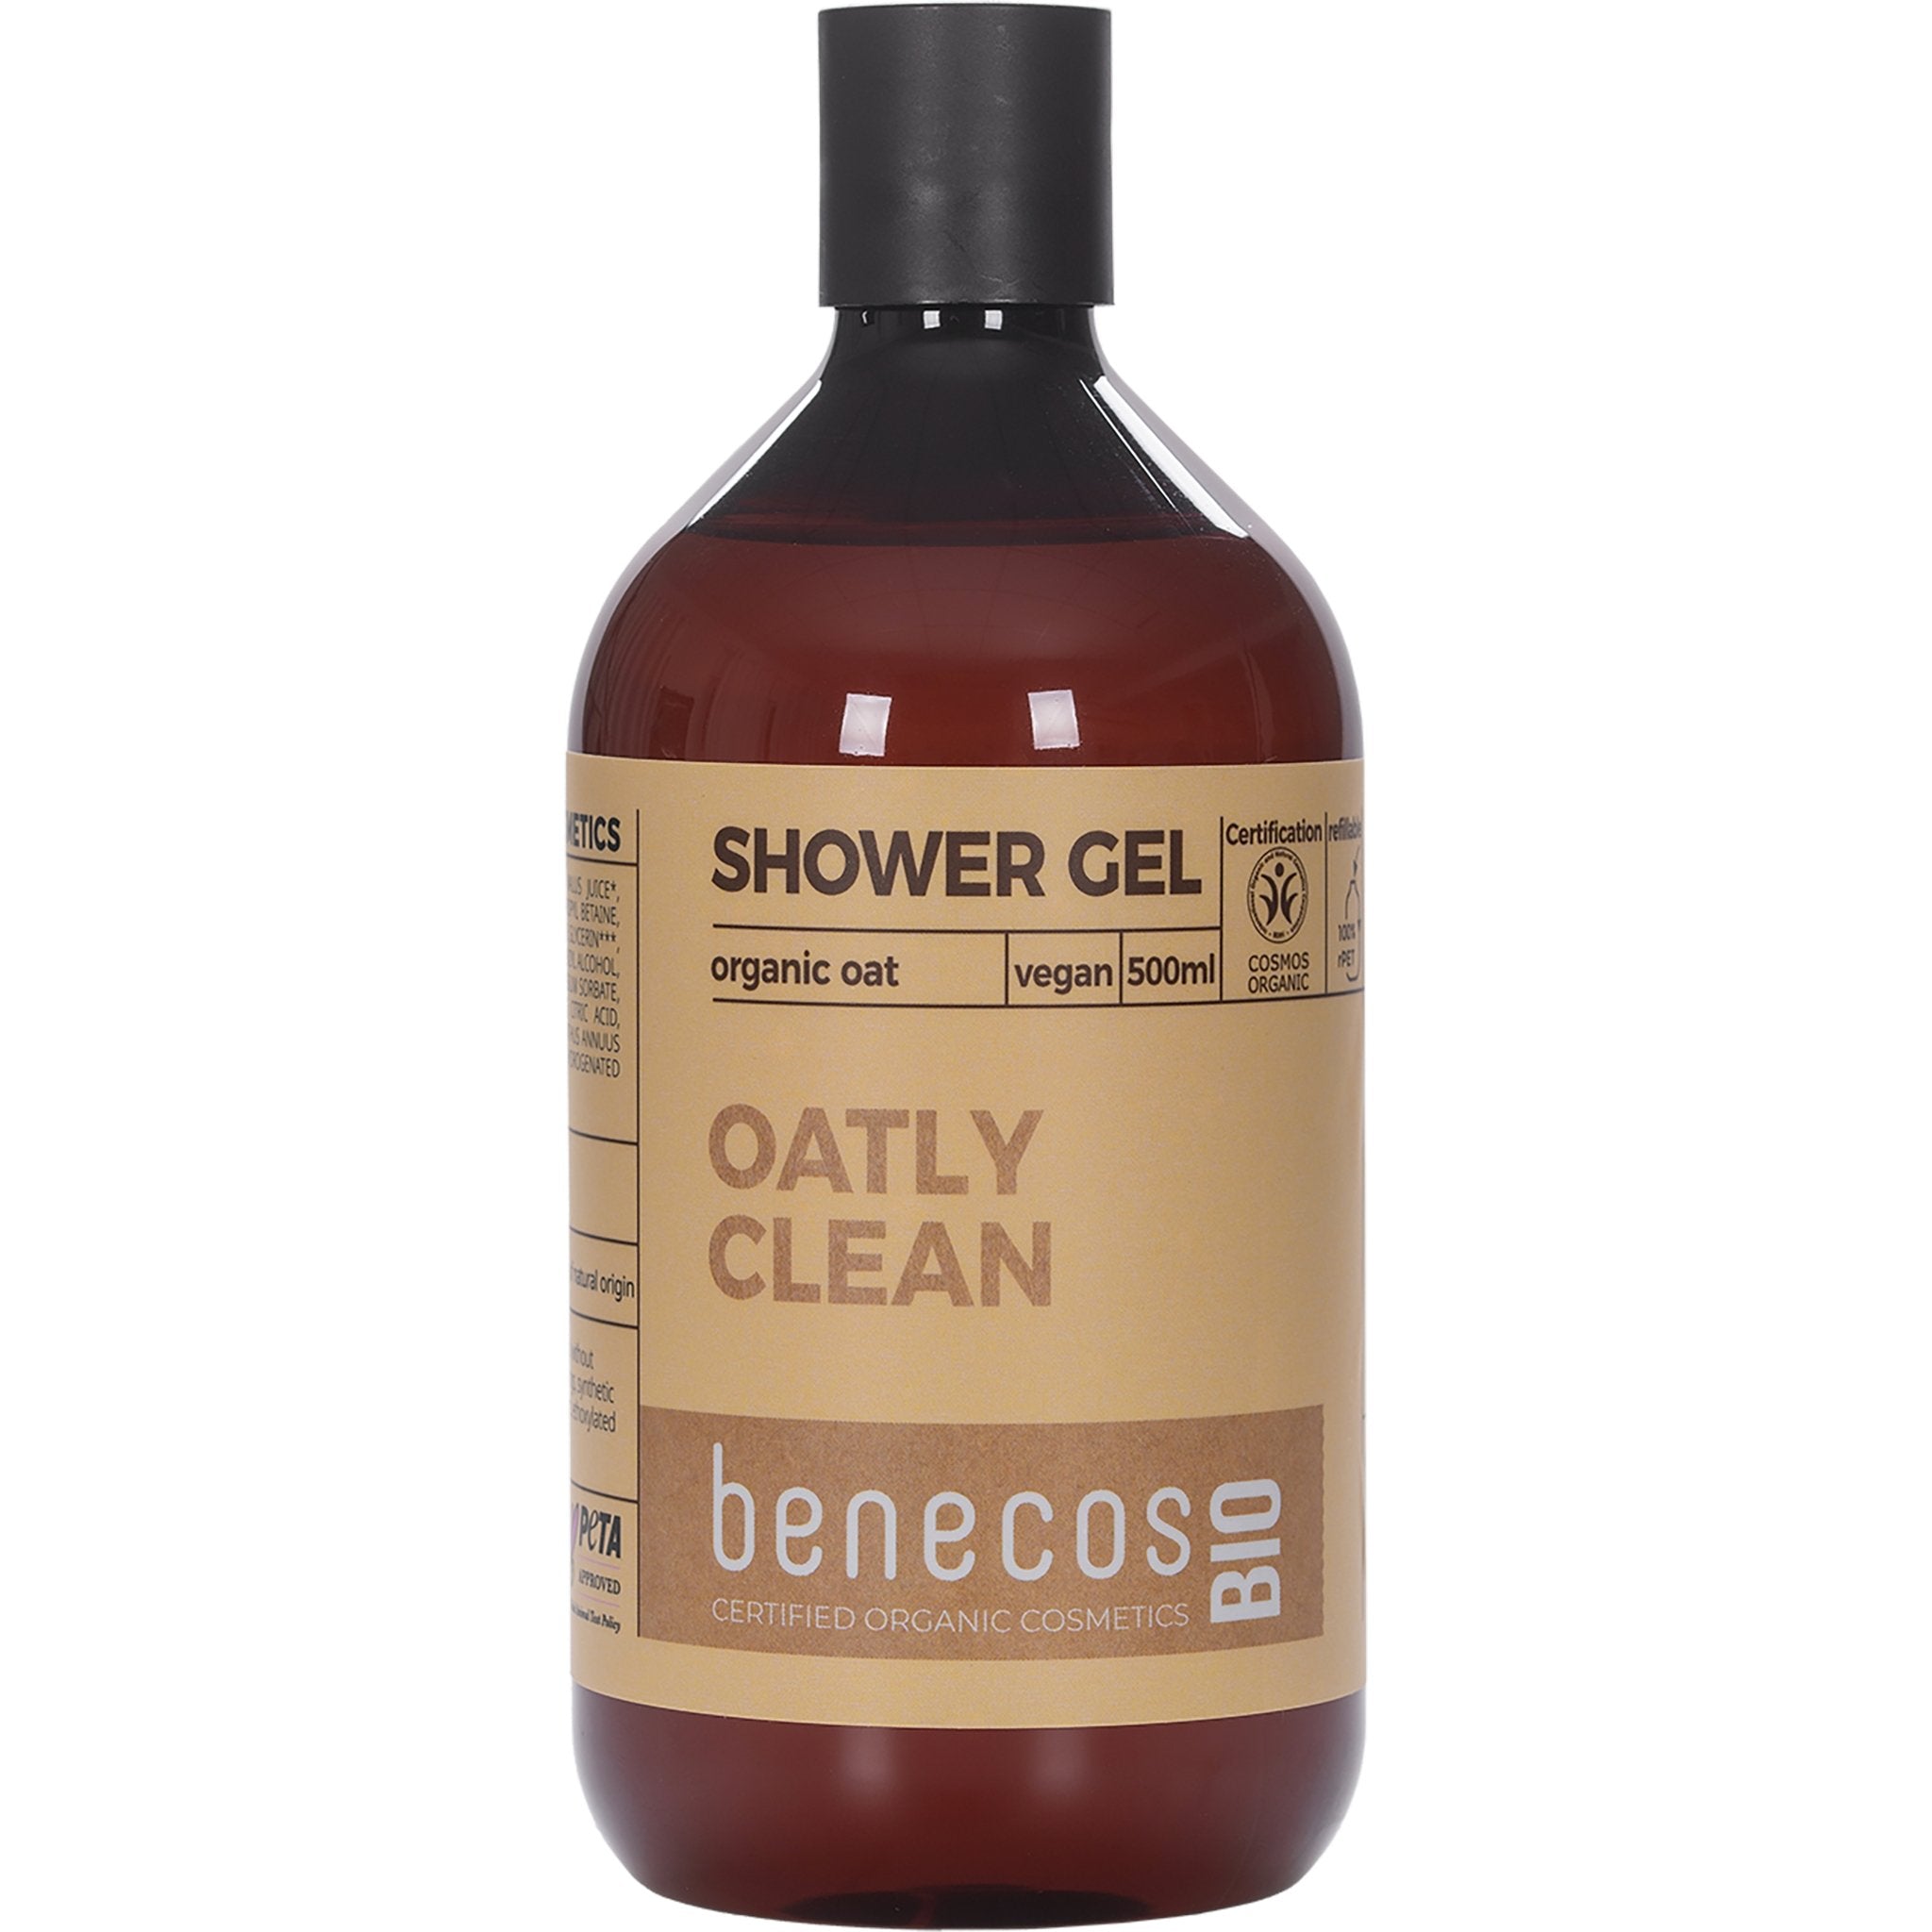 NEW Oatly Clean Shower Gel - mypure.co.uk